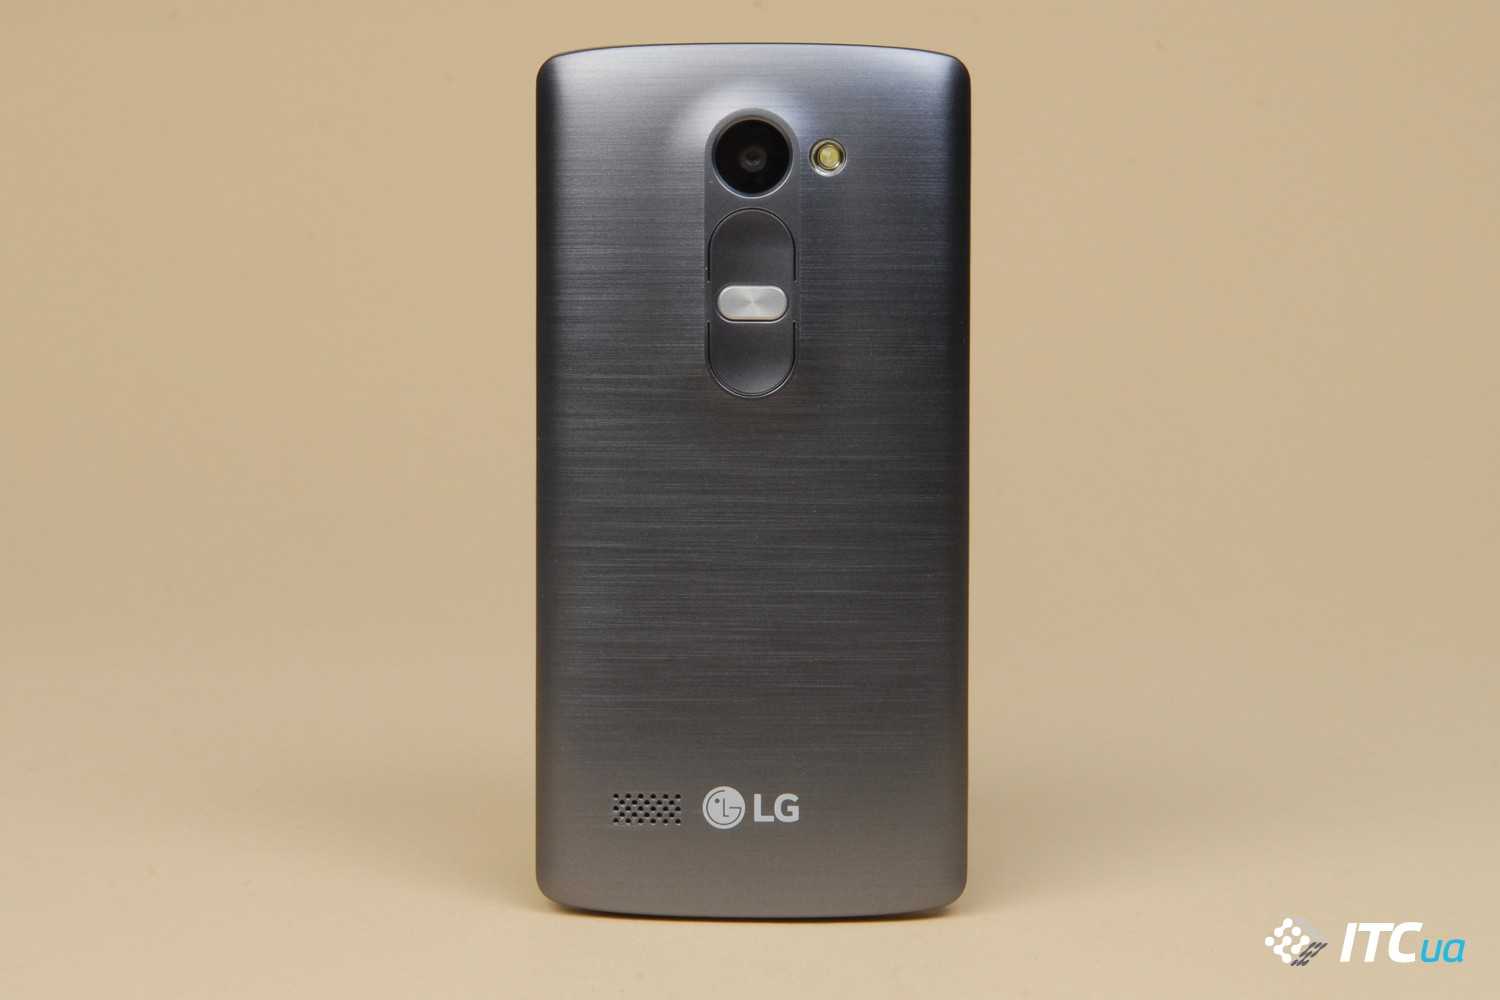 Обзор lg leon h324 - крошка с неплохой камерой и приятным дизайном - super g